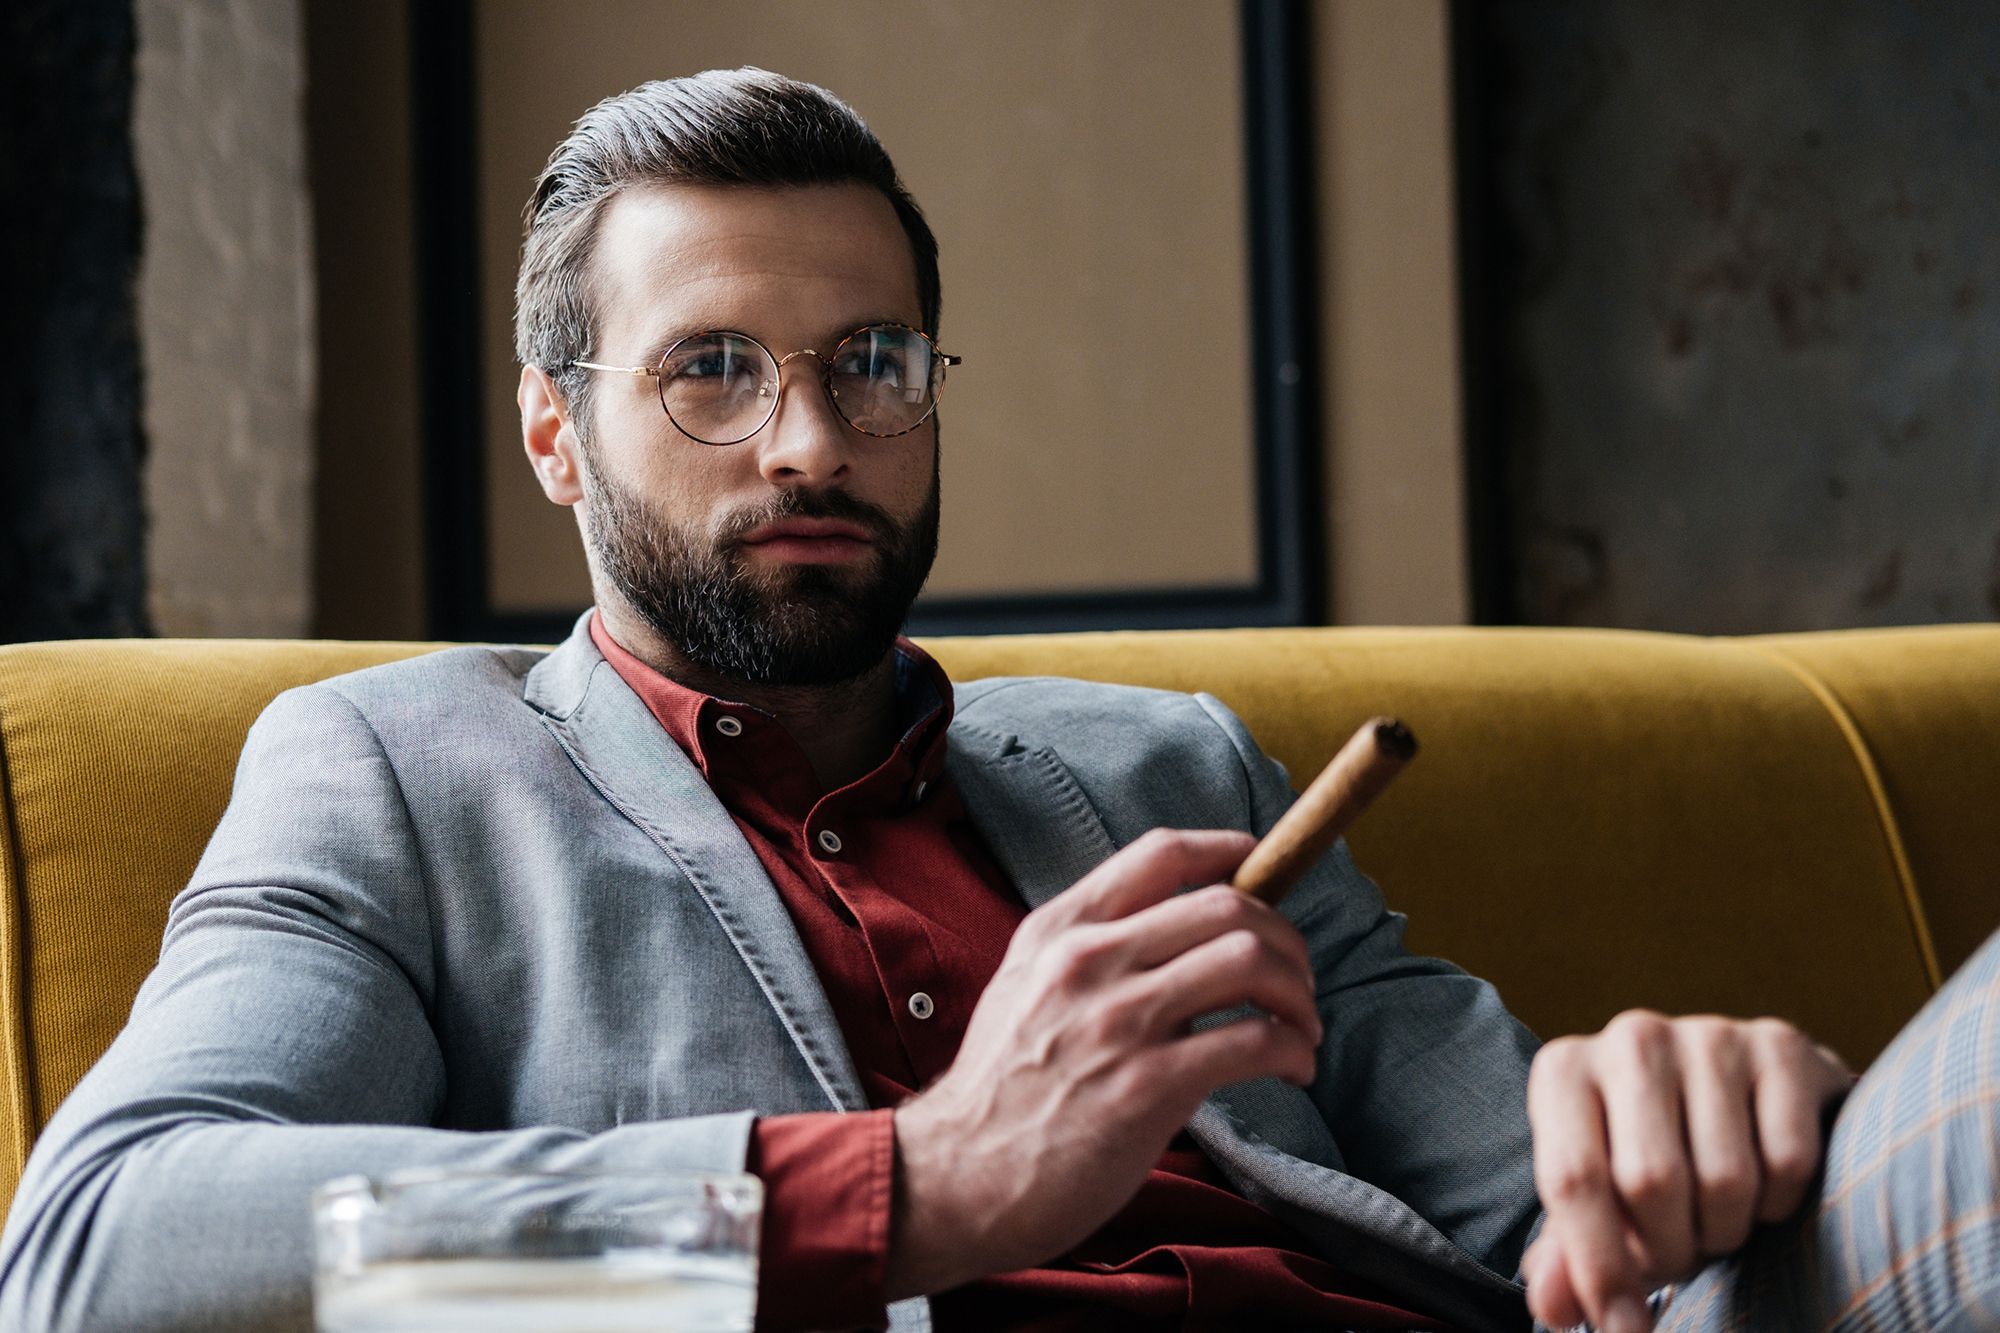 Mann mit Brille, Anzug und Zigarre auf einem Sofa